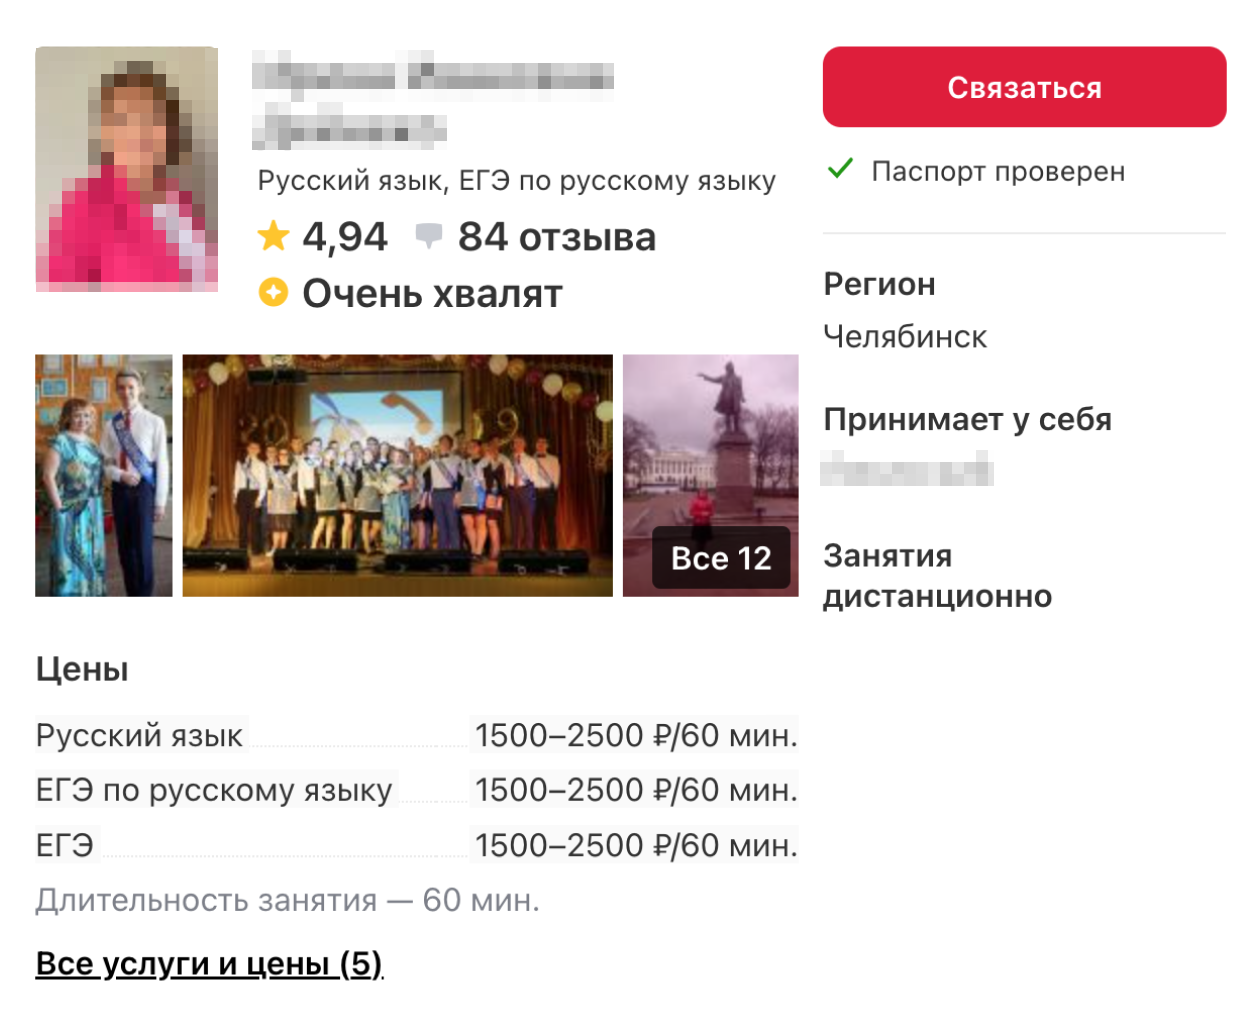 Цены на услуги преподавателей, готовящих к ОГЭ по русскому, разные, но в среднем — 2500 ₽ за 60 минут. Источник: profi.ru